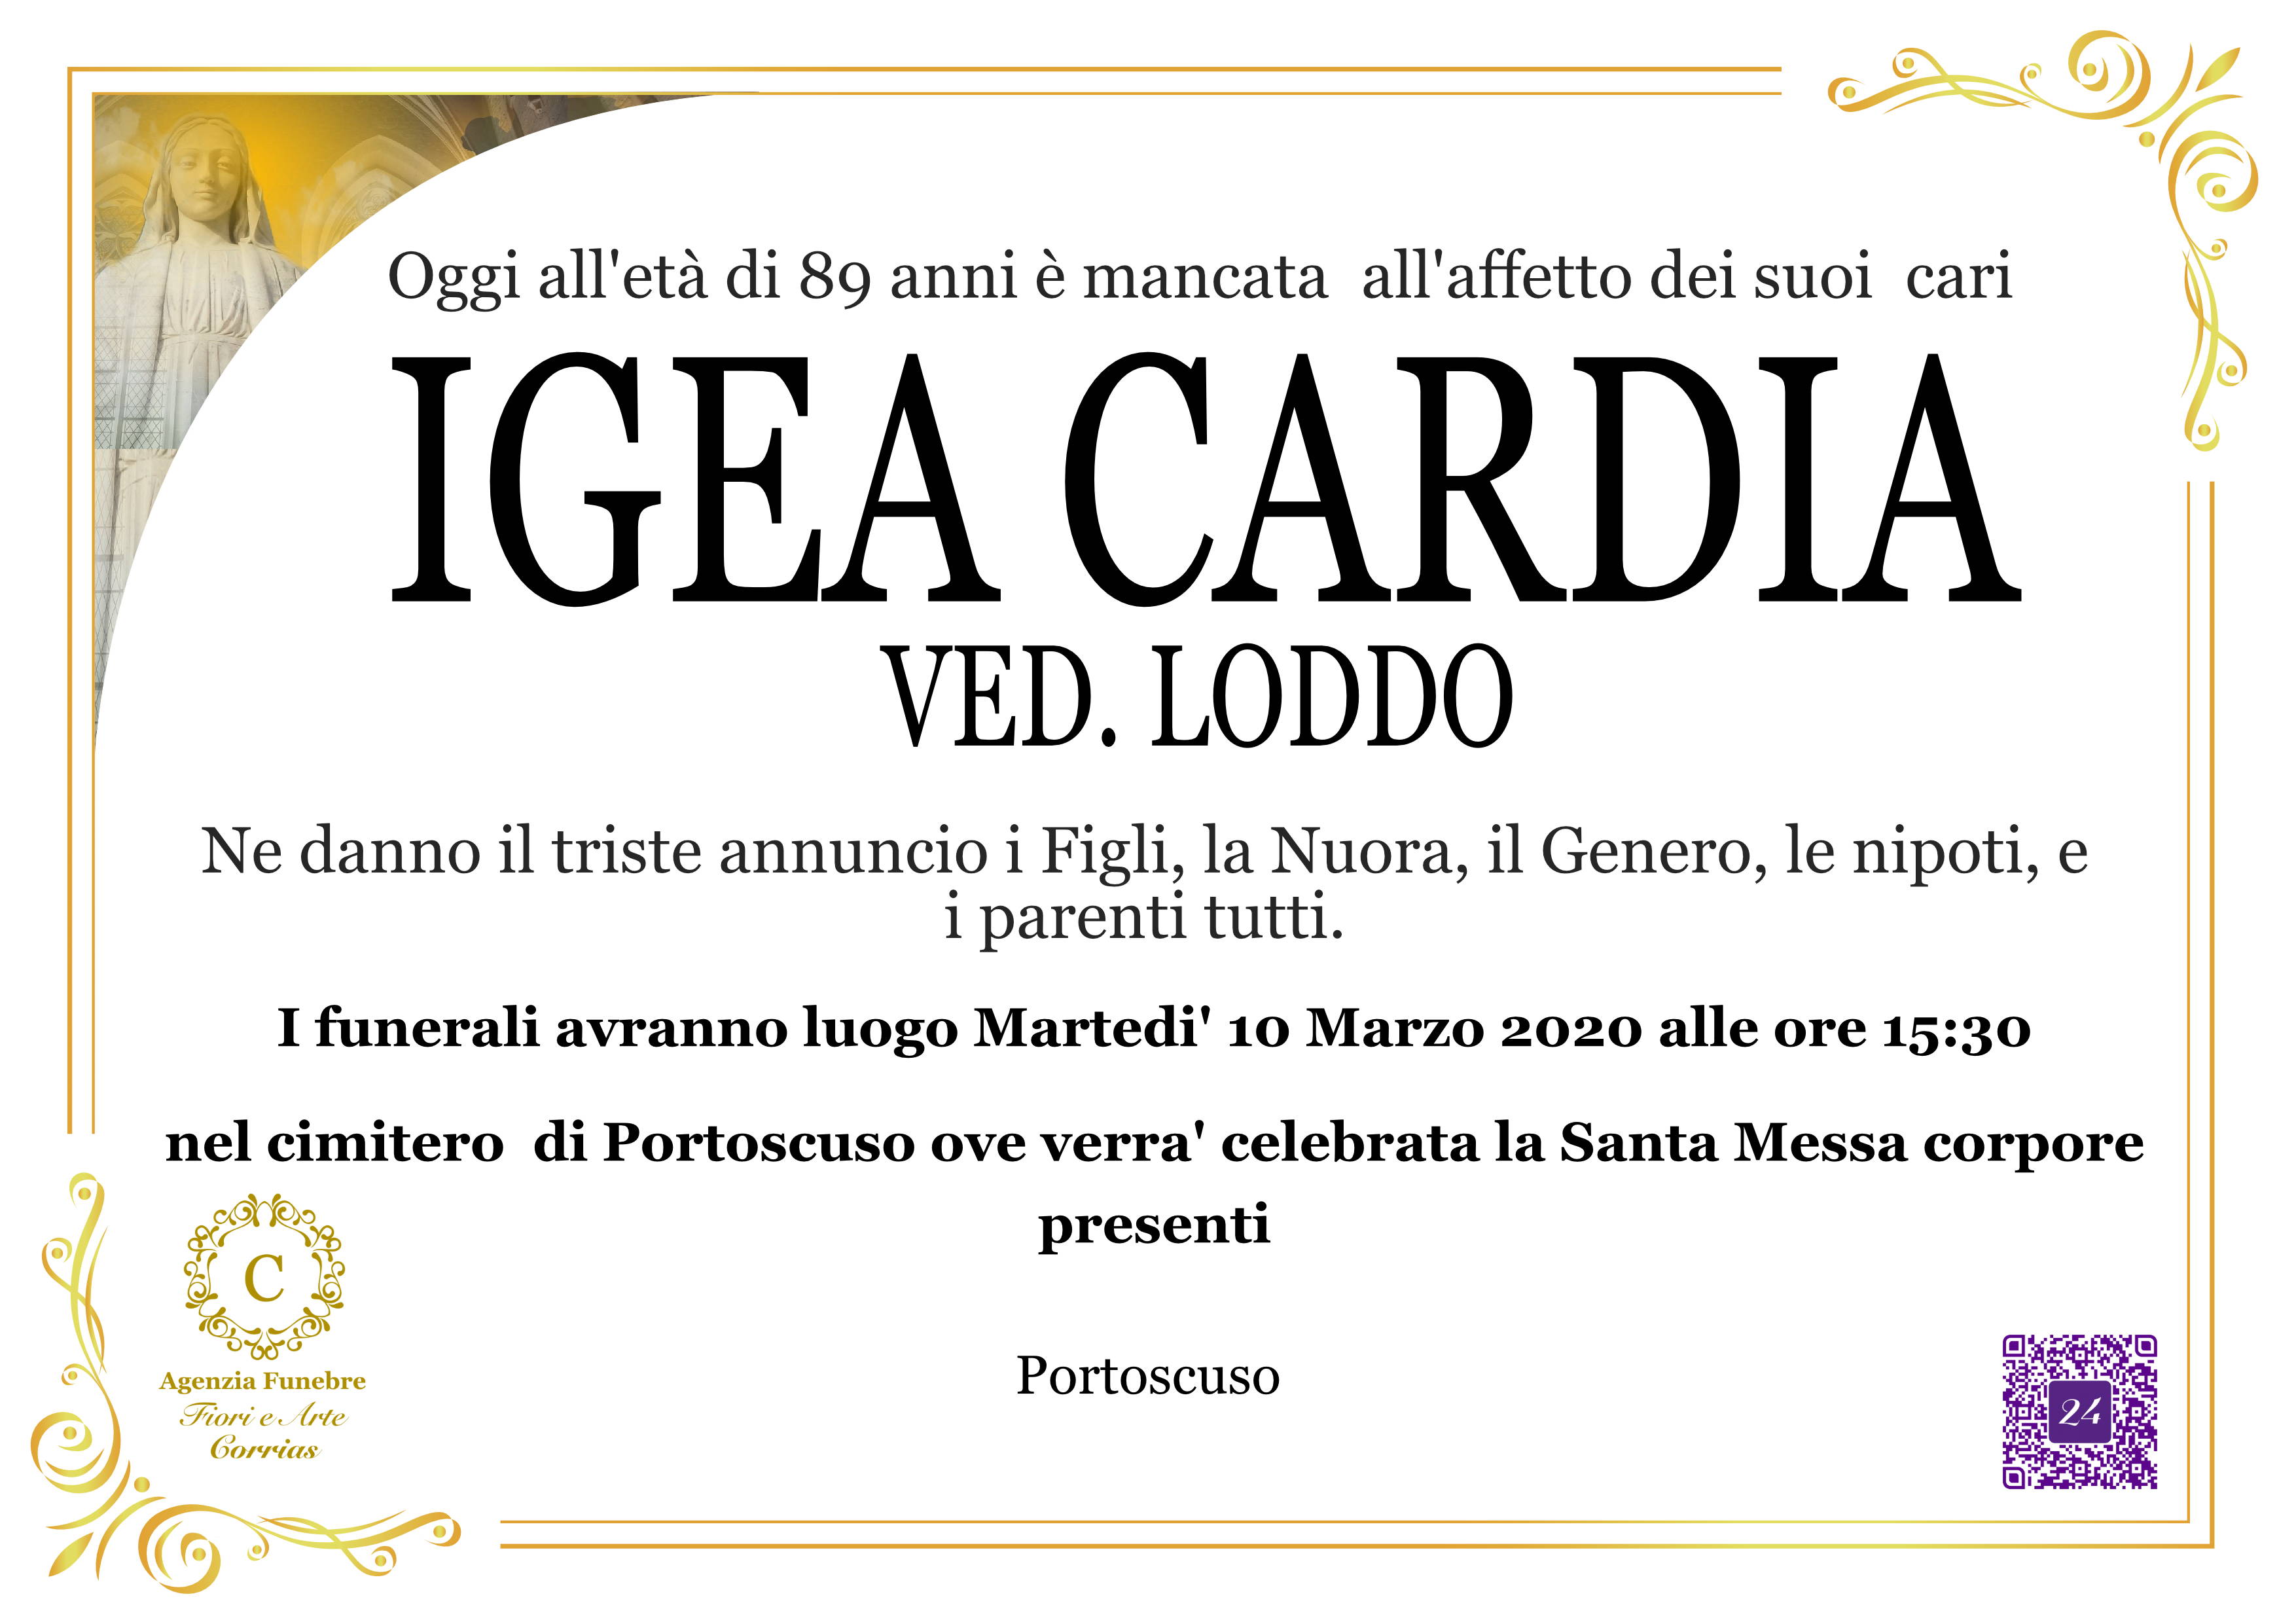 Igea Cardia